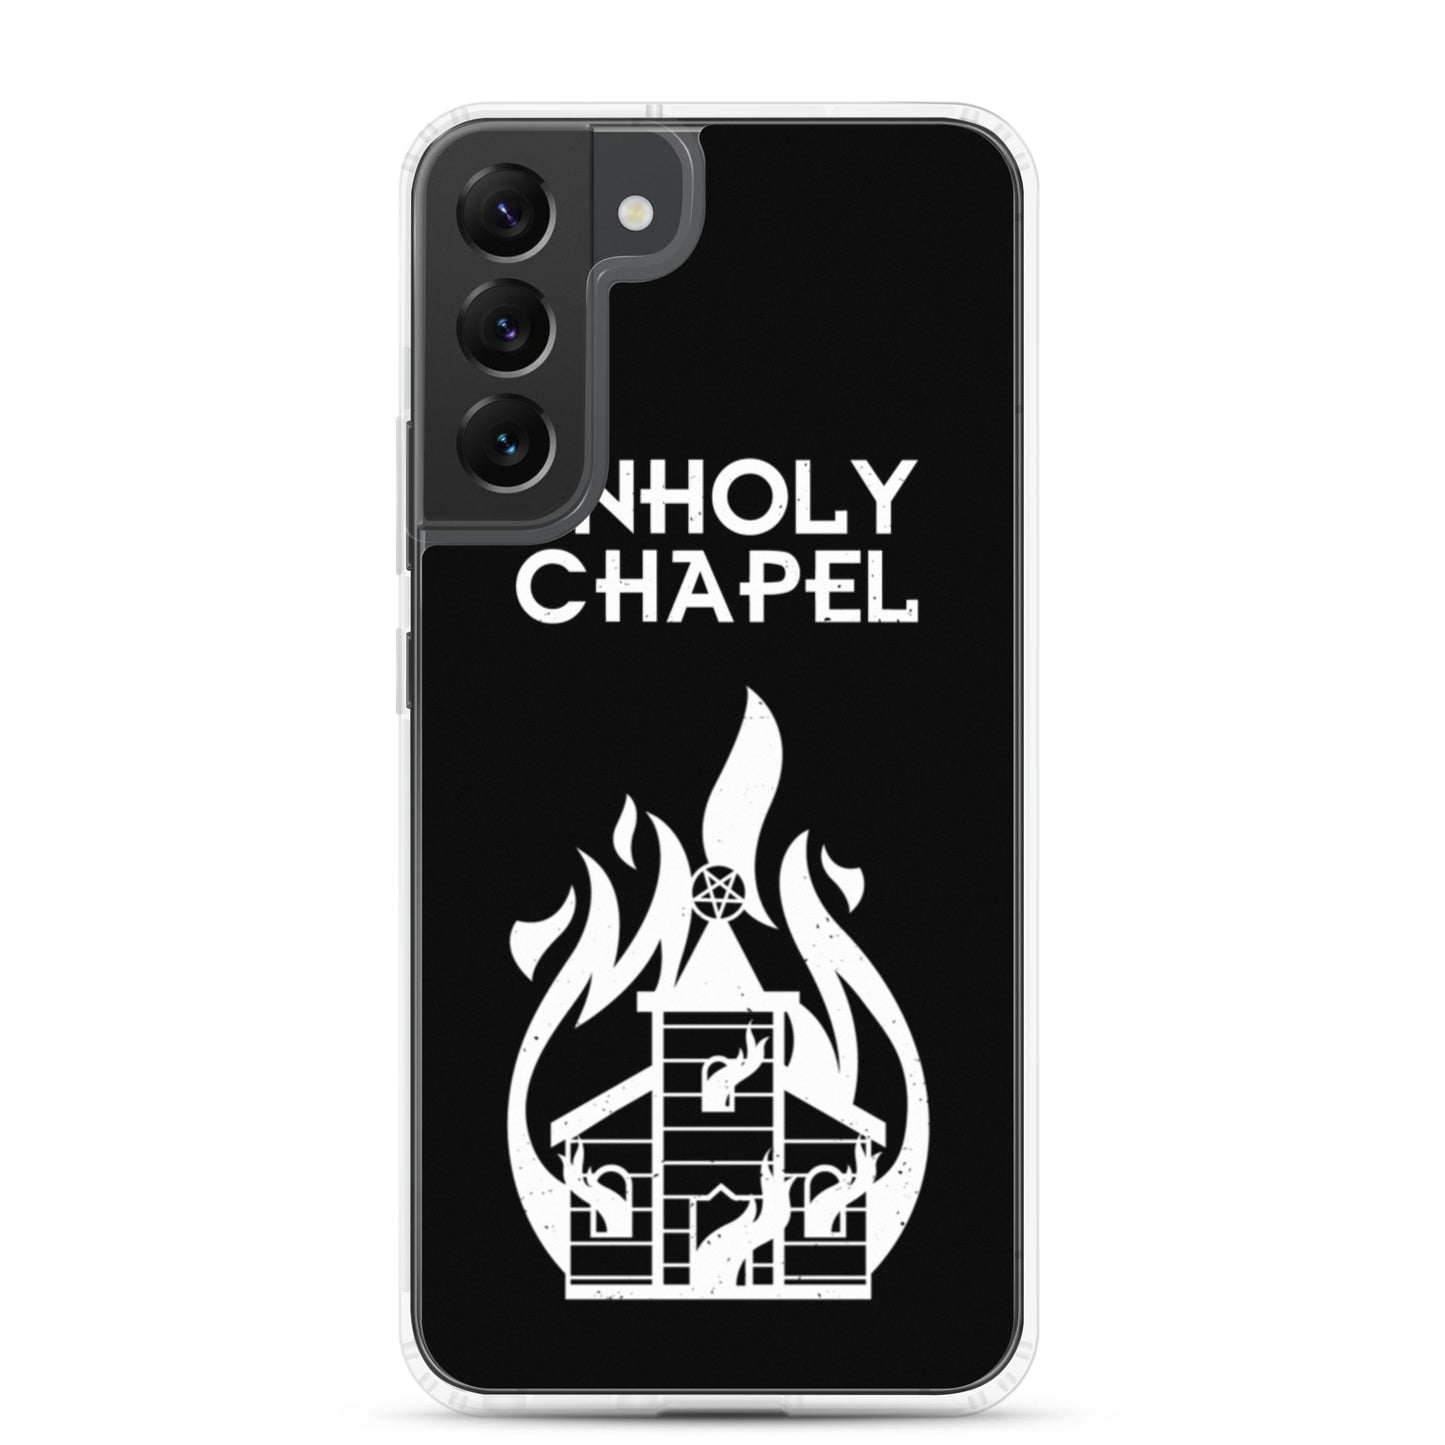 Unholy chapel Samsung Case